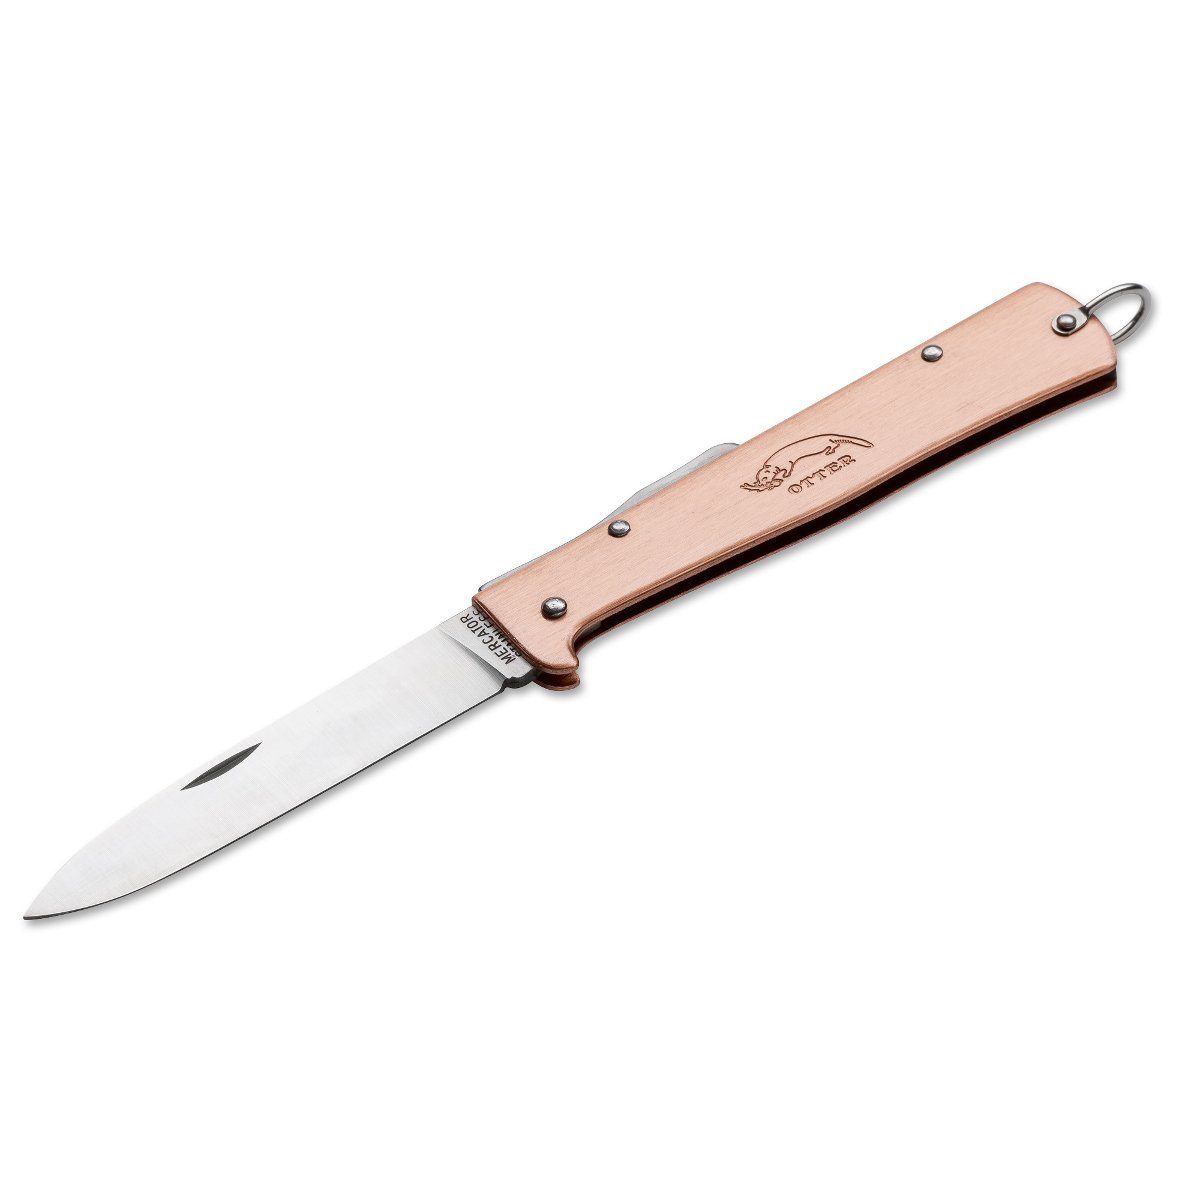 Otter Messer Taschenmesser Mercator-Messer groß Kupfer mit Clip, Klinge rostfrei, Backlock